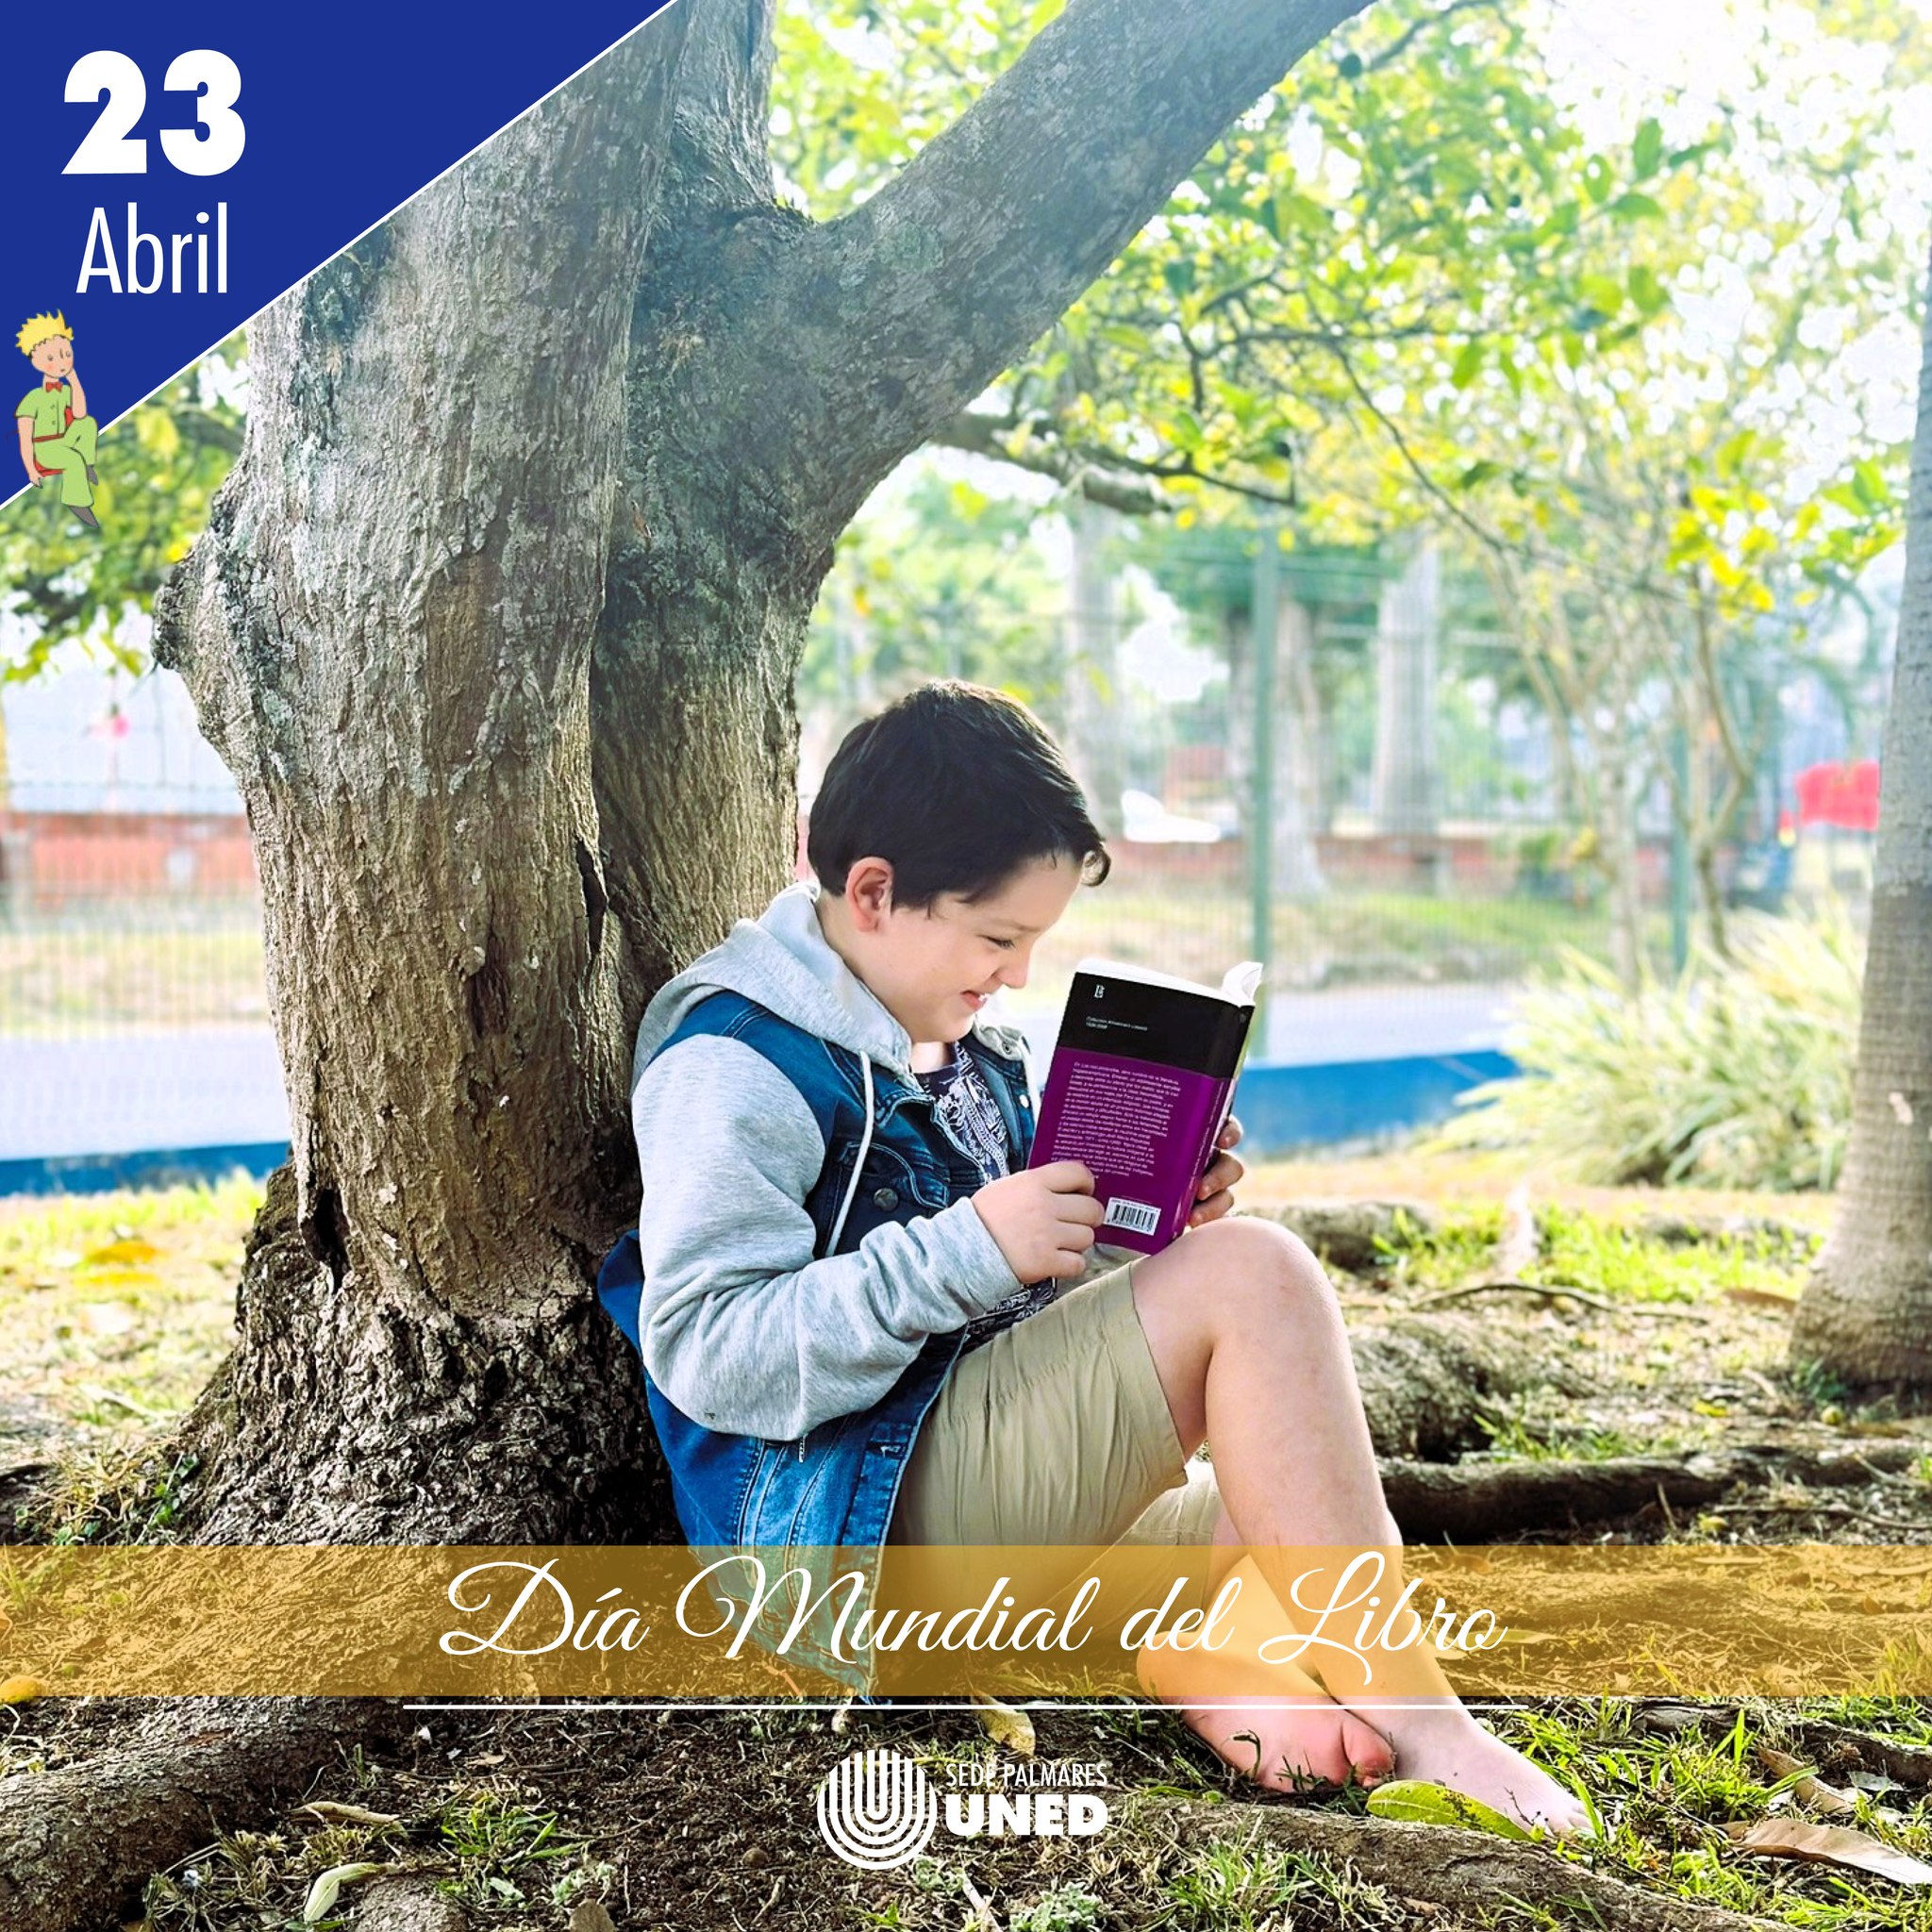 24 Día Mundial del Libro